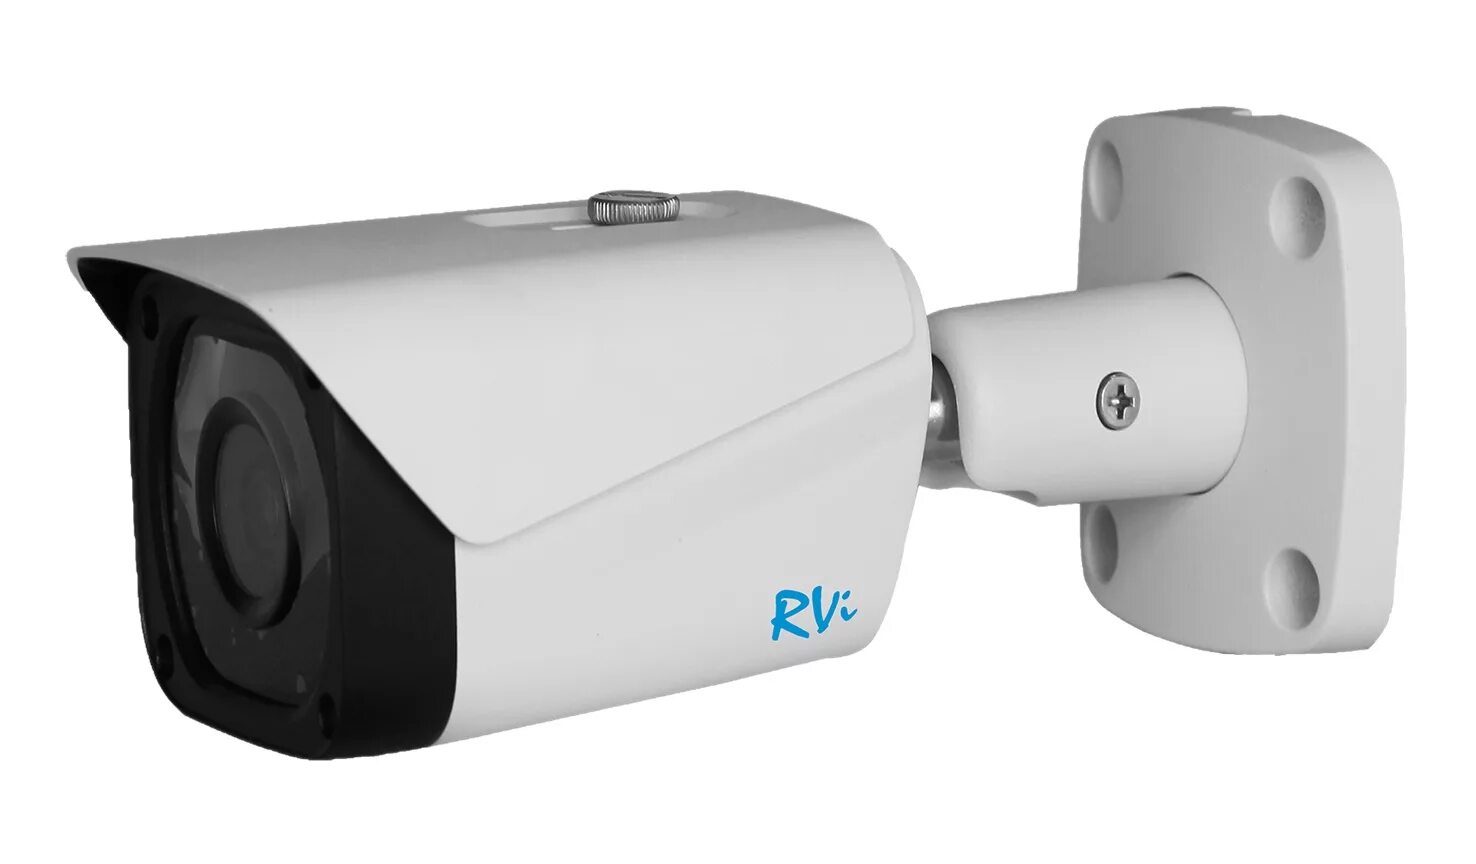 RVI-ipc44m4l. Видеокамера RVI IP 3.6. RVI-ipc44 v.2 (3.6). RVI-ipc44 v.2 видеокамера 4mp. Камера 6 мм